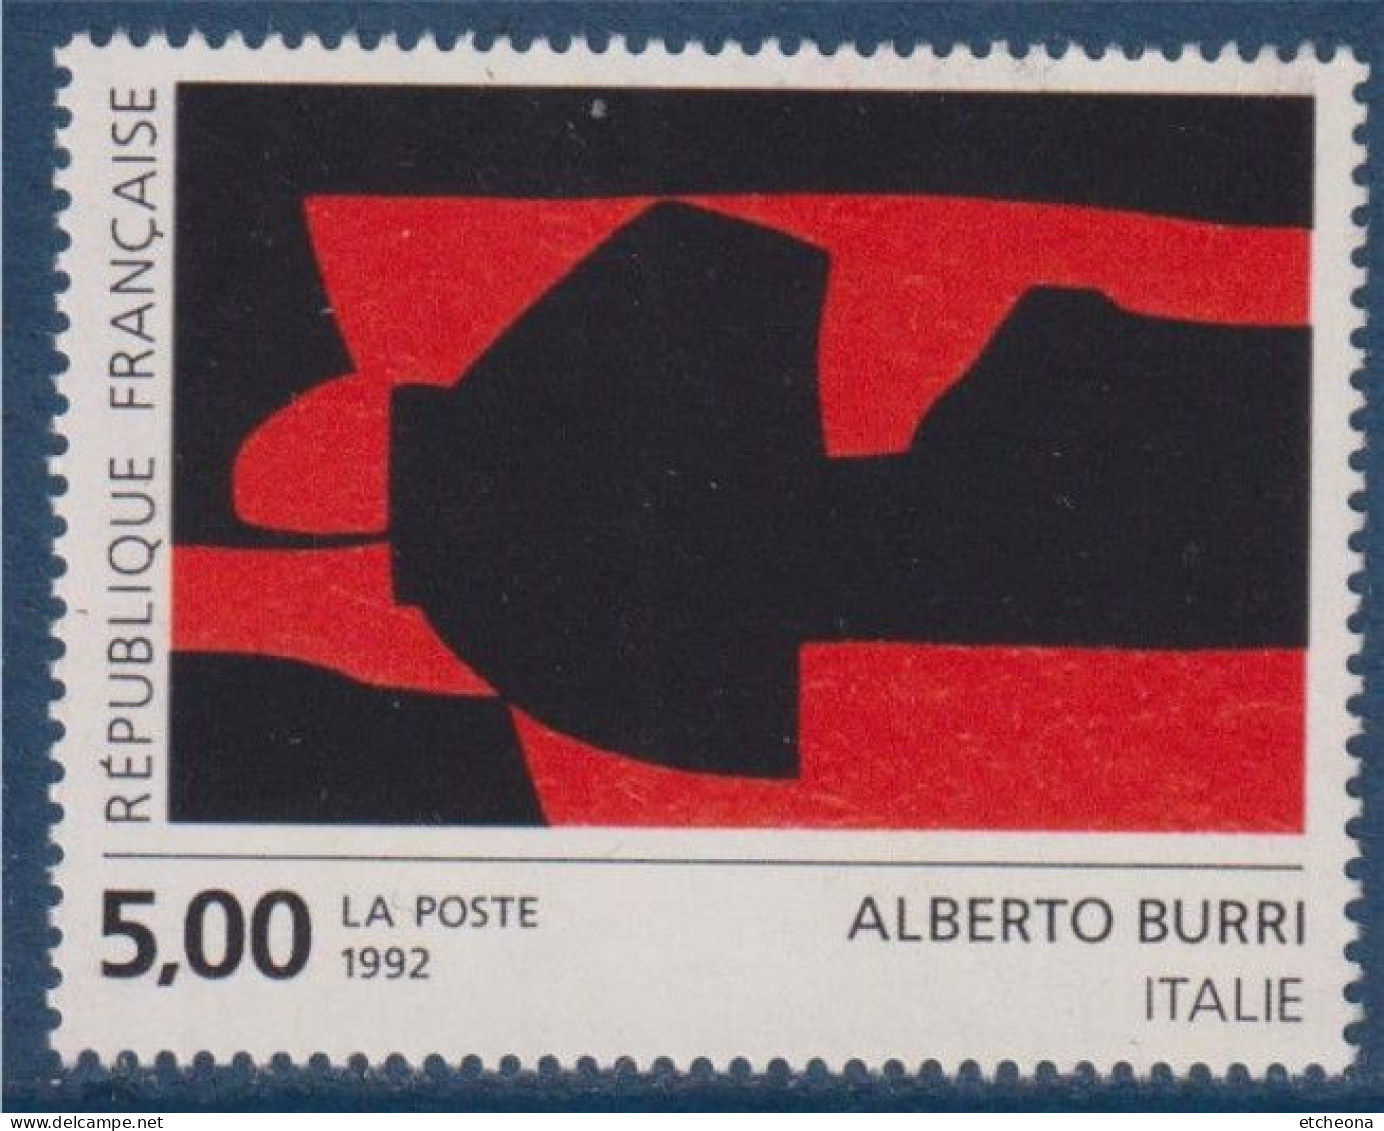 Série Européenne D'art Contemporain "Création Pour La Poste" D'Alberto Burri N°2780 Neuf Italie - Ungebraucht